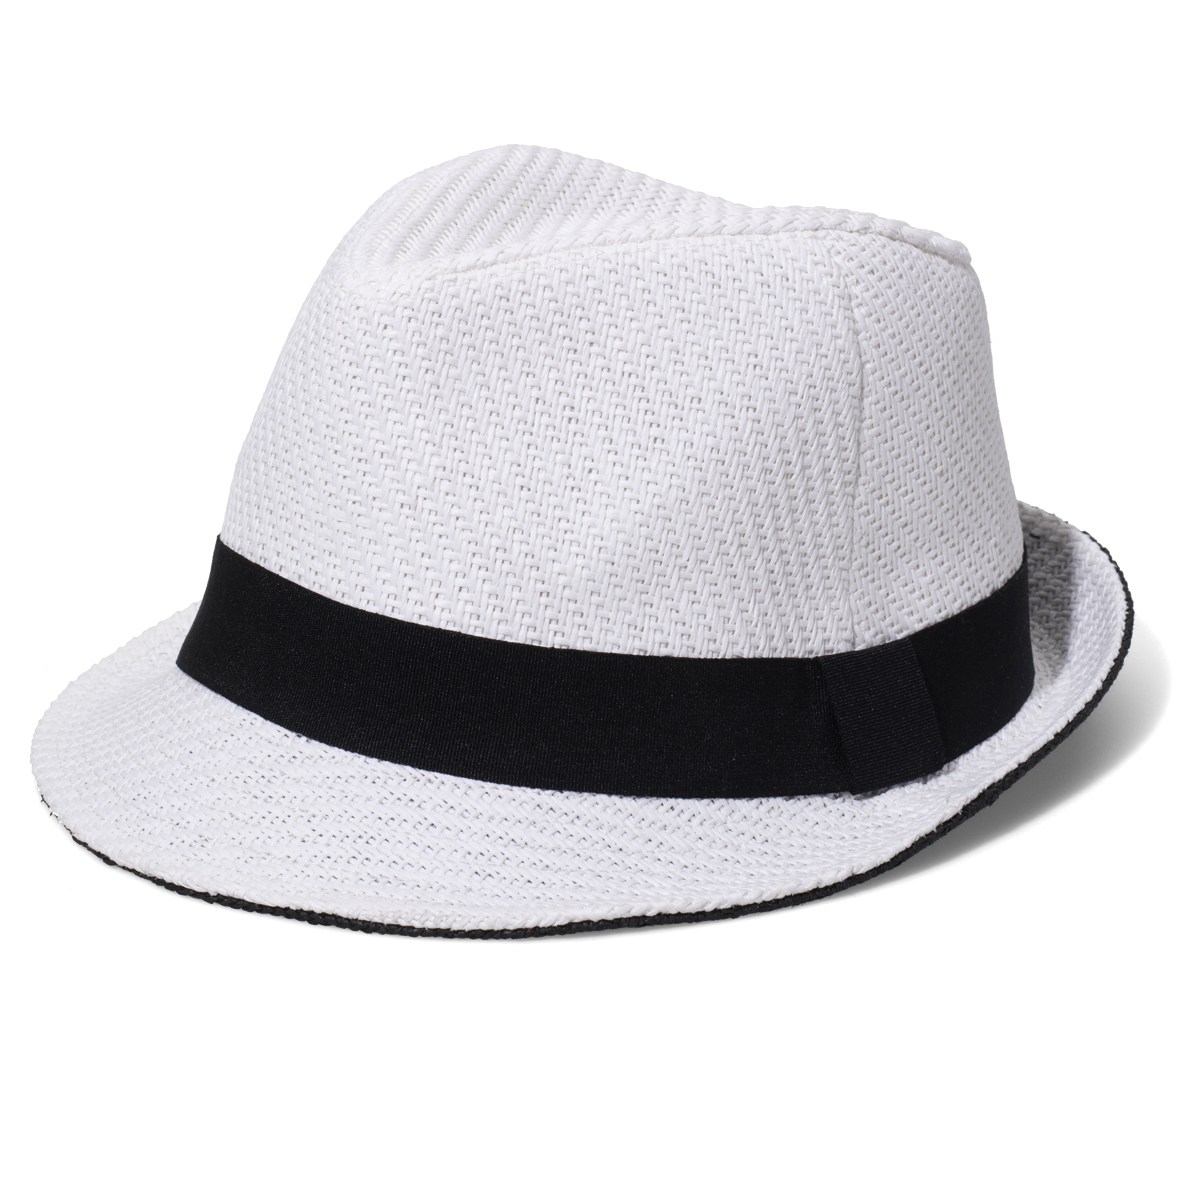 New Yorker fehér férfi textil kalap fekete szalaggal fotója